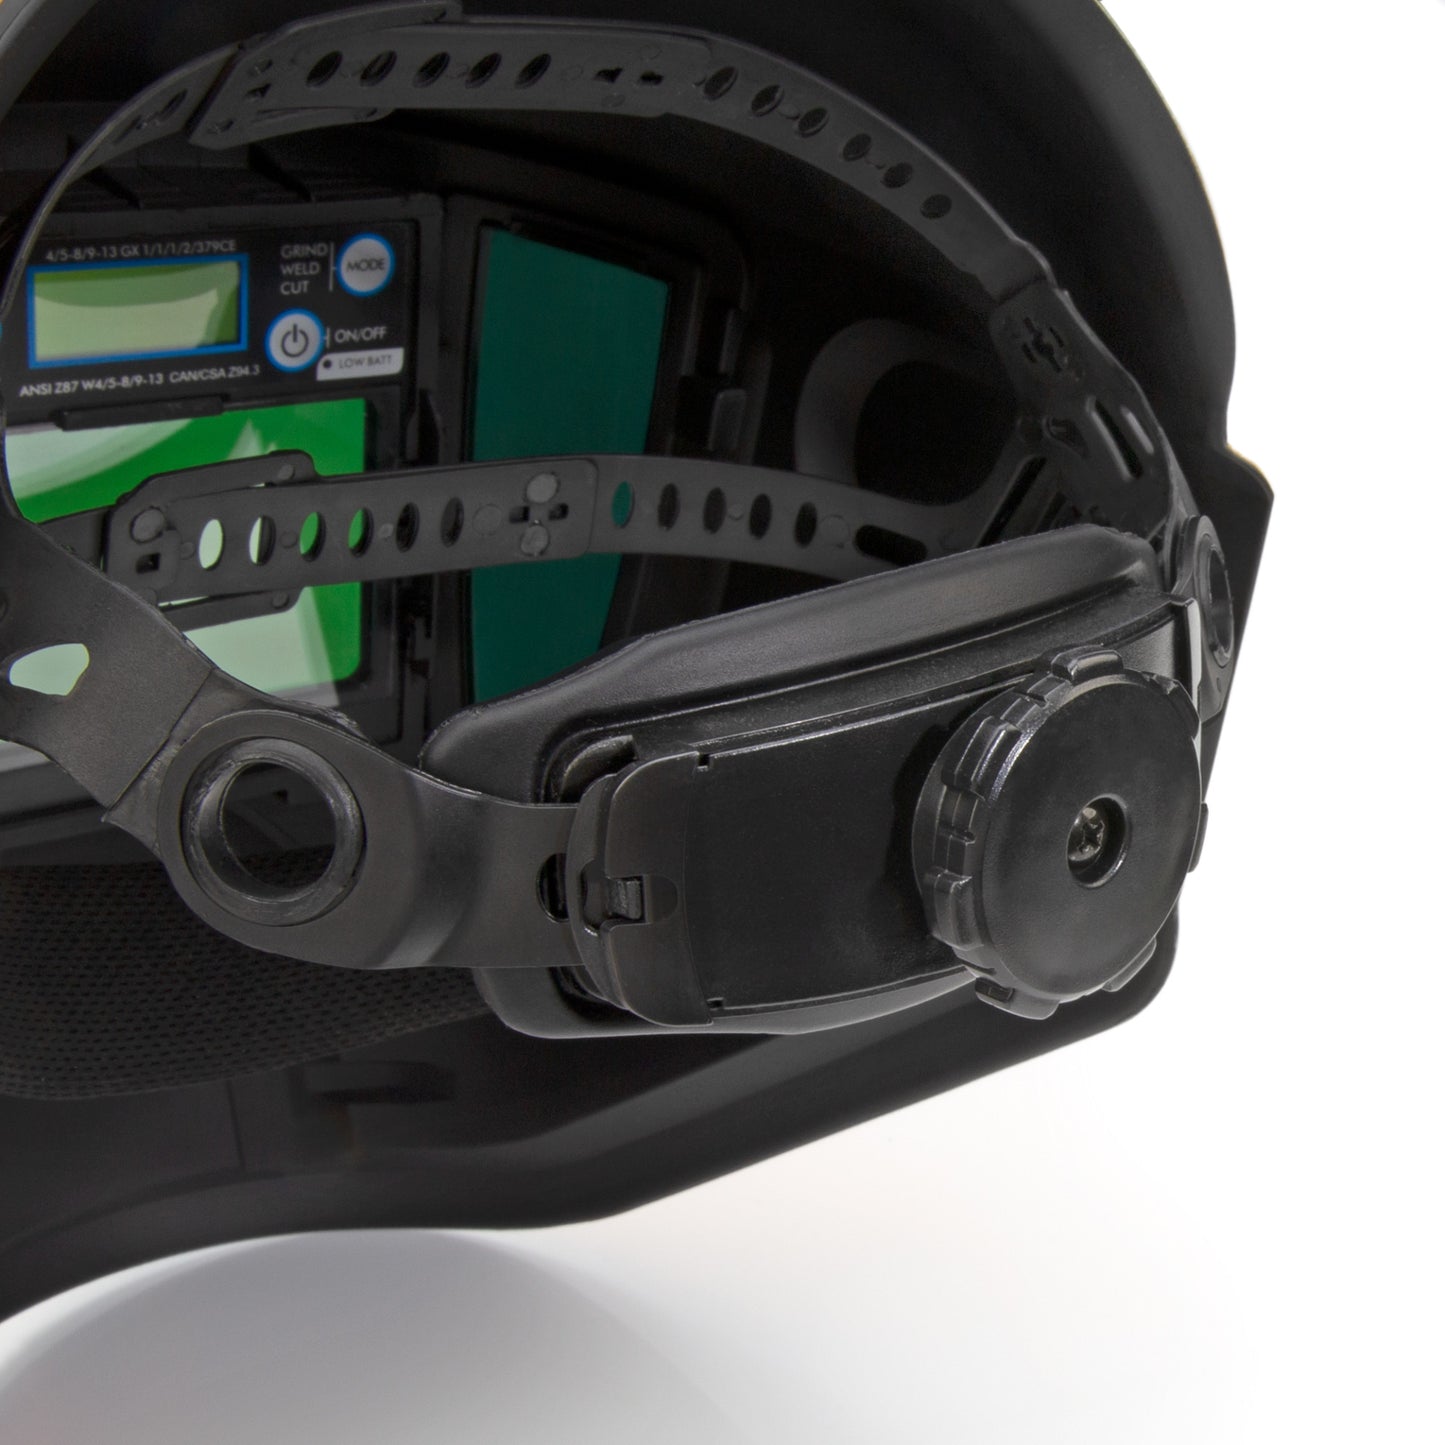 Replacement Adjustable Headgear for DXMF21011 Welding Helmet